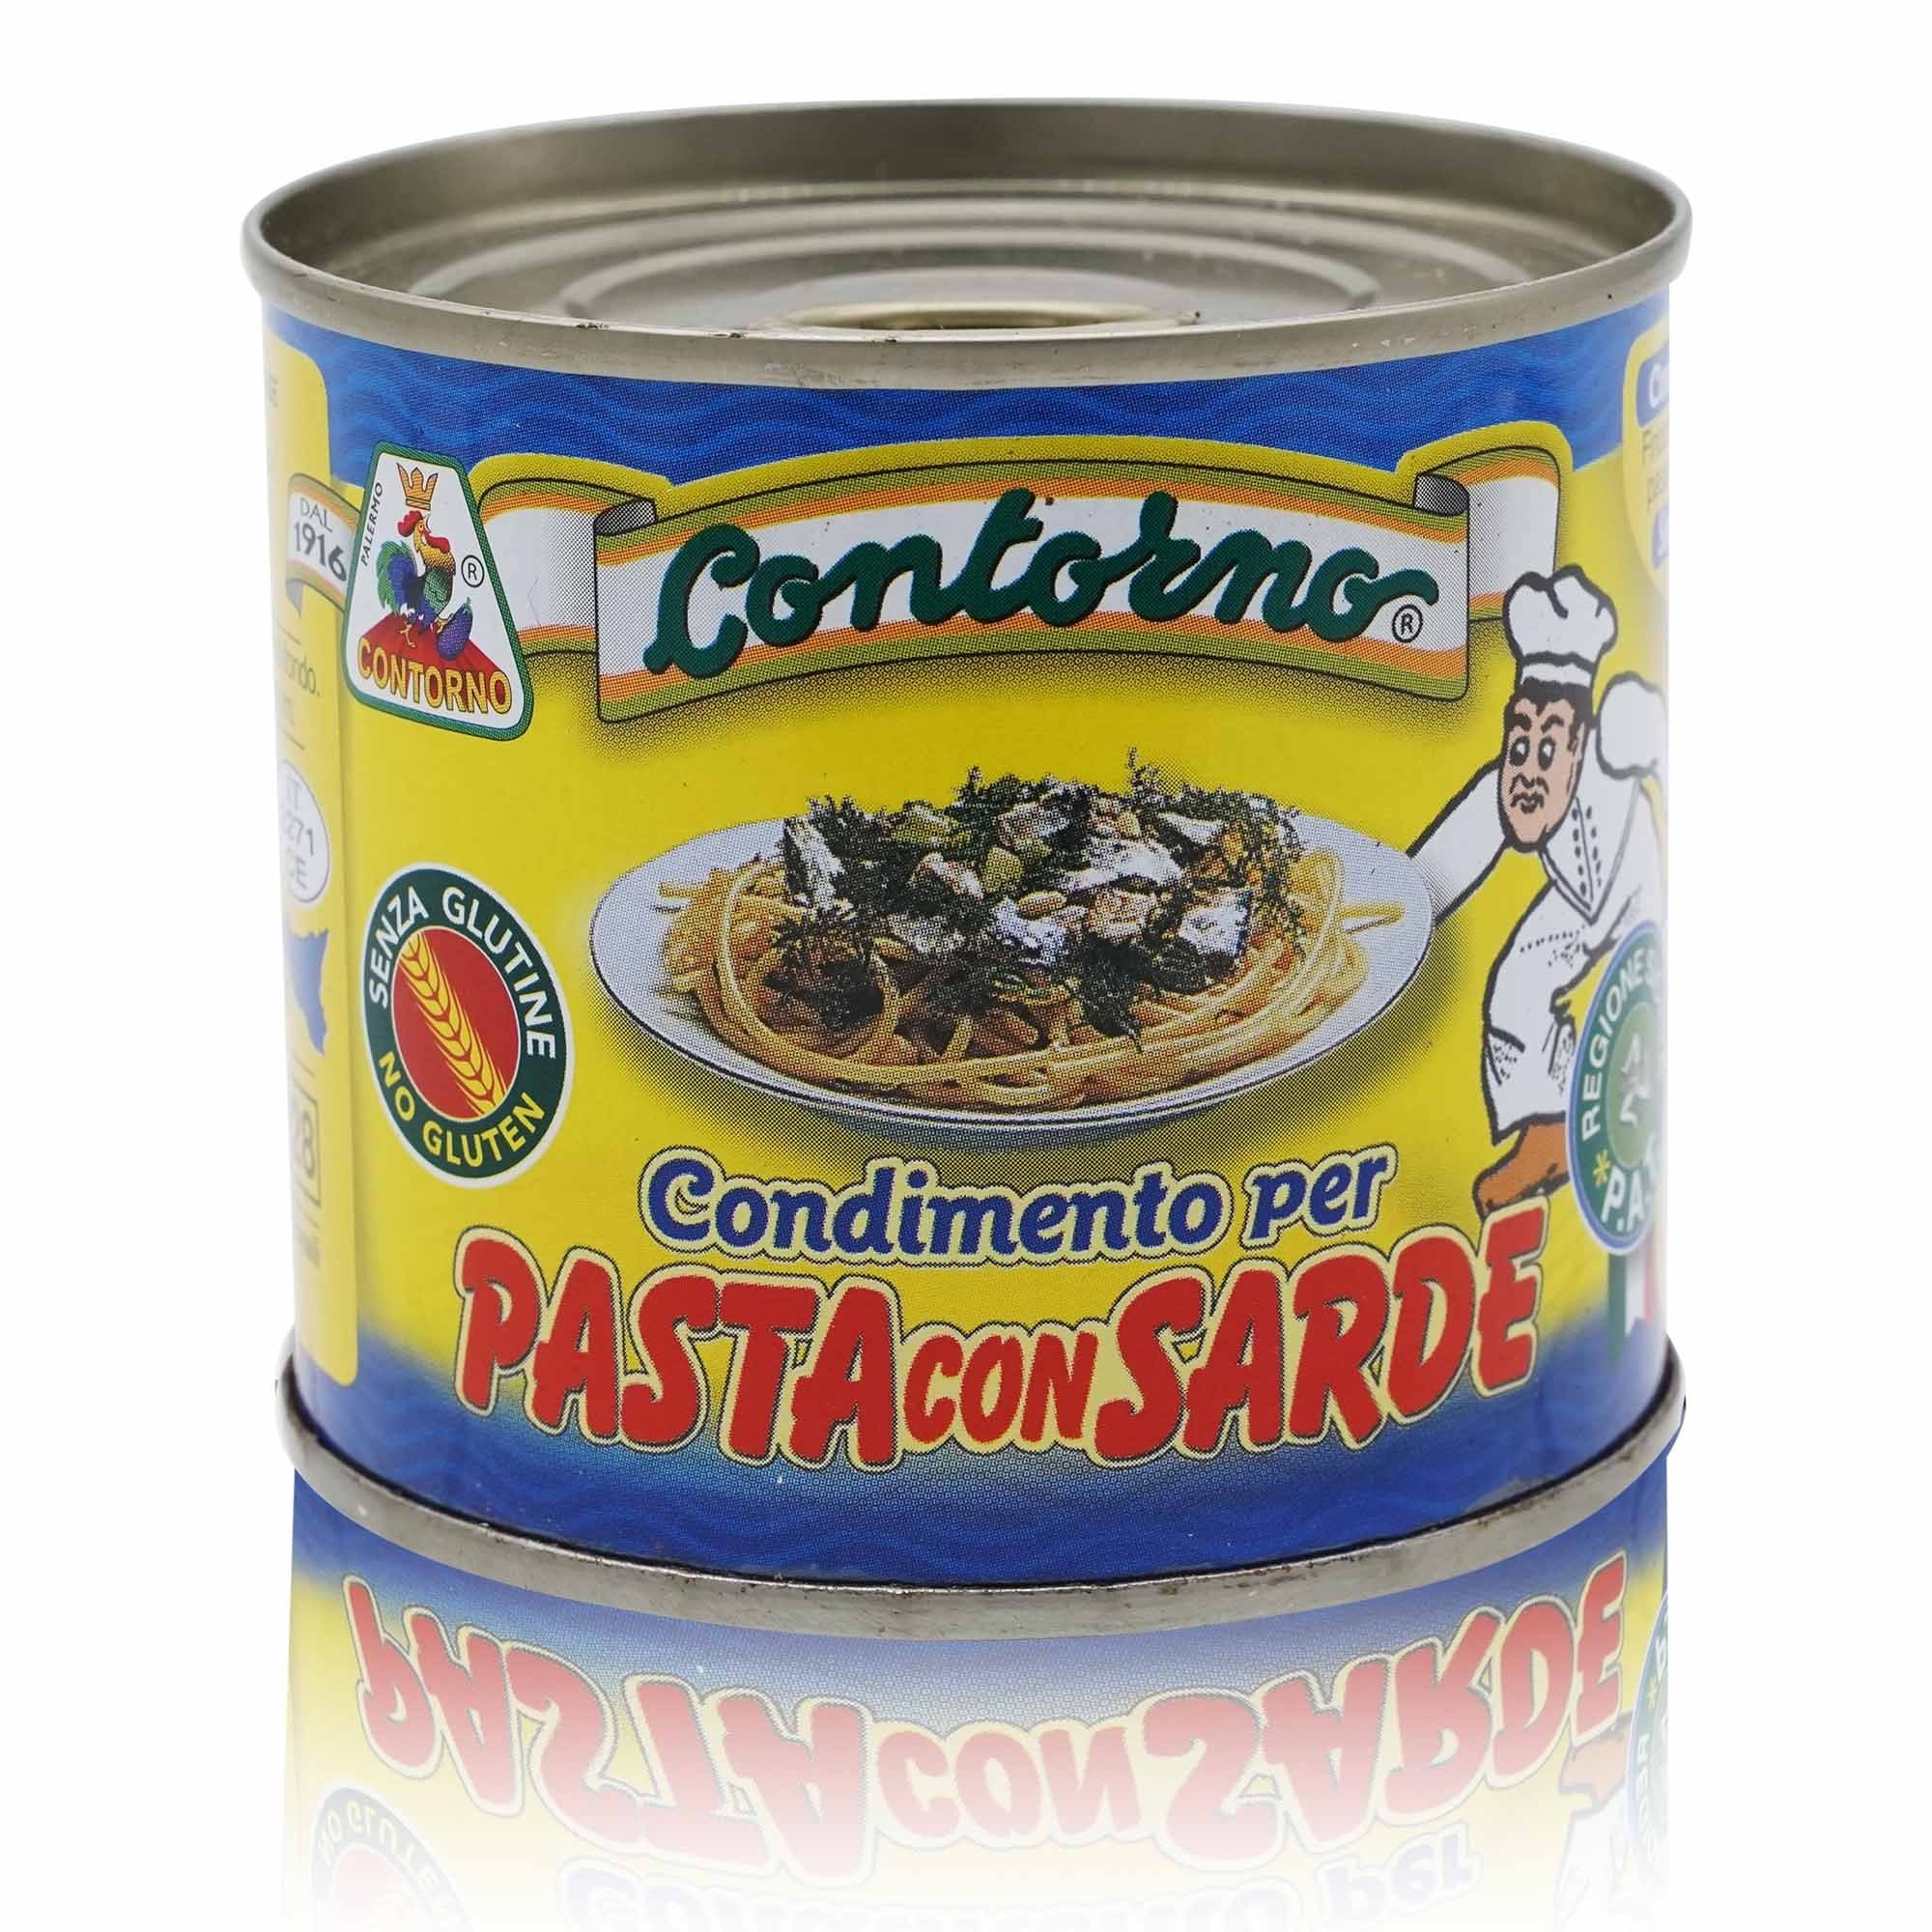 CONTORNO Condimento per Pasta con Sarde – Würzmischung für Pasta mit Sardellen - 0,410kg